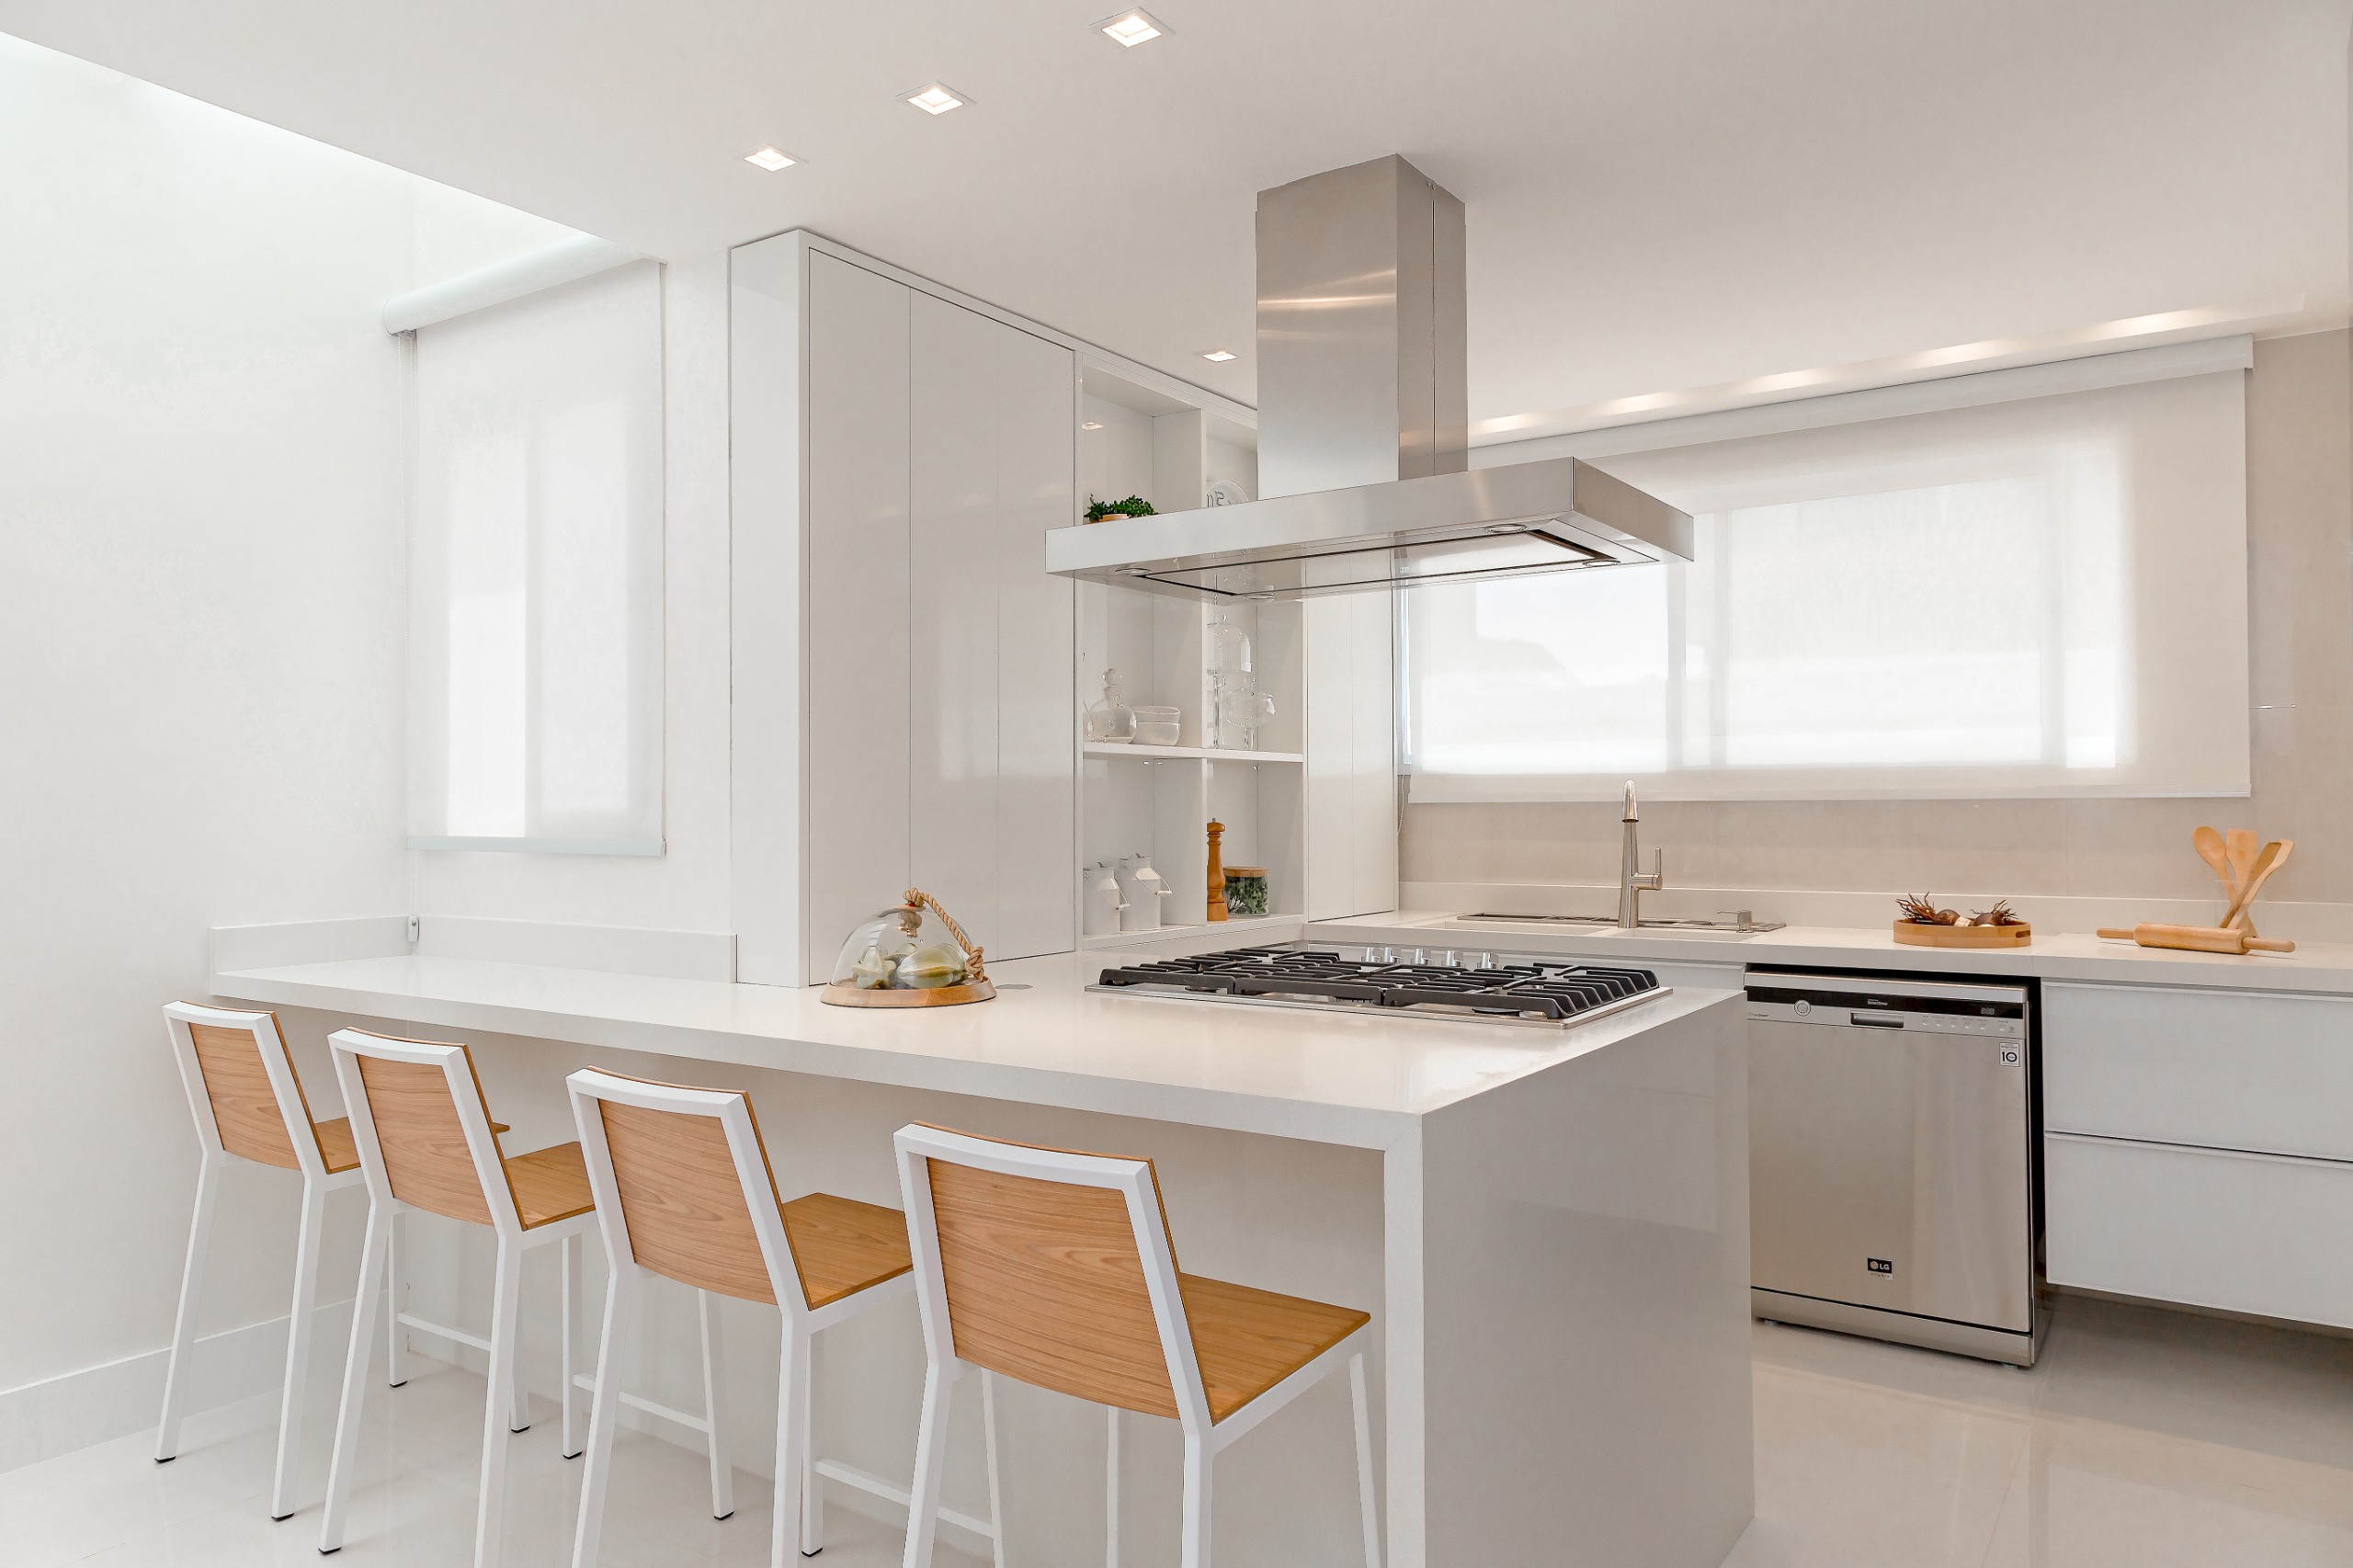 Pastilhas de inox e tons neutros marcam o décor desta casa de 410 m², Projeto de Mari Coelho. Na foto. cozinha com marcenaria branca e bancada.